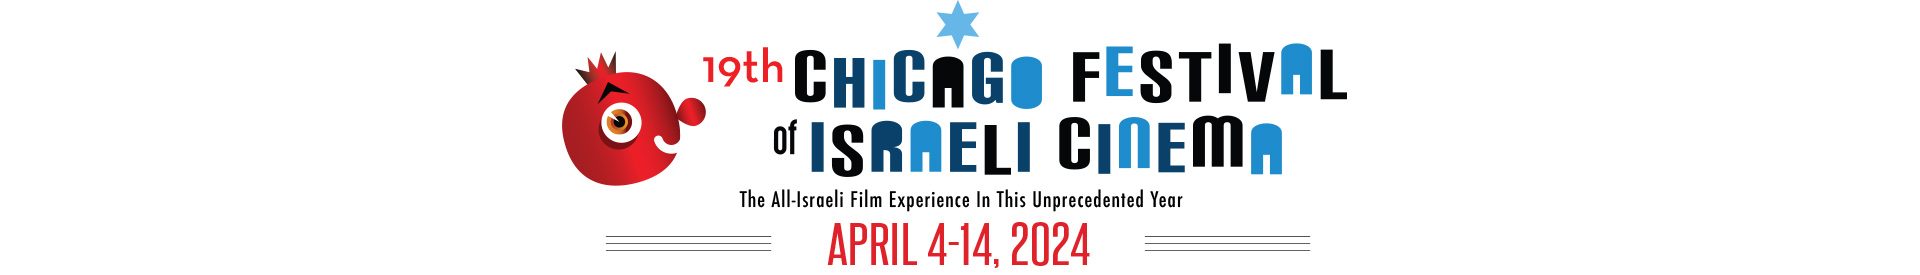 2024 Chicago Festival of Israeli Cinema